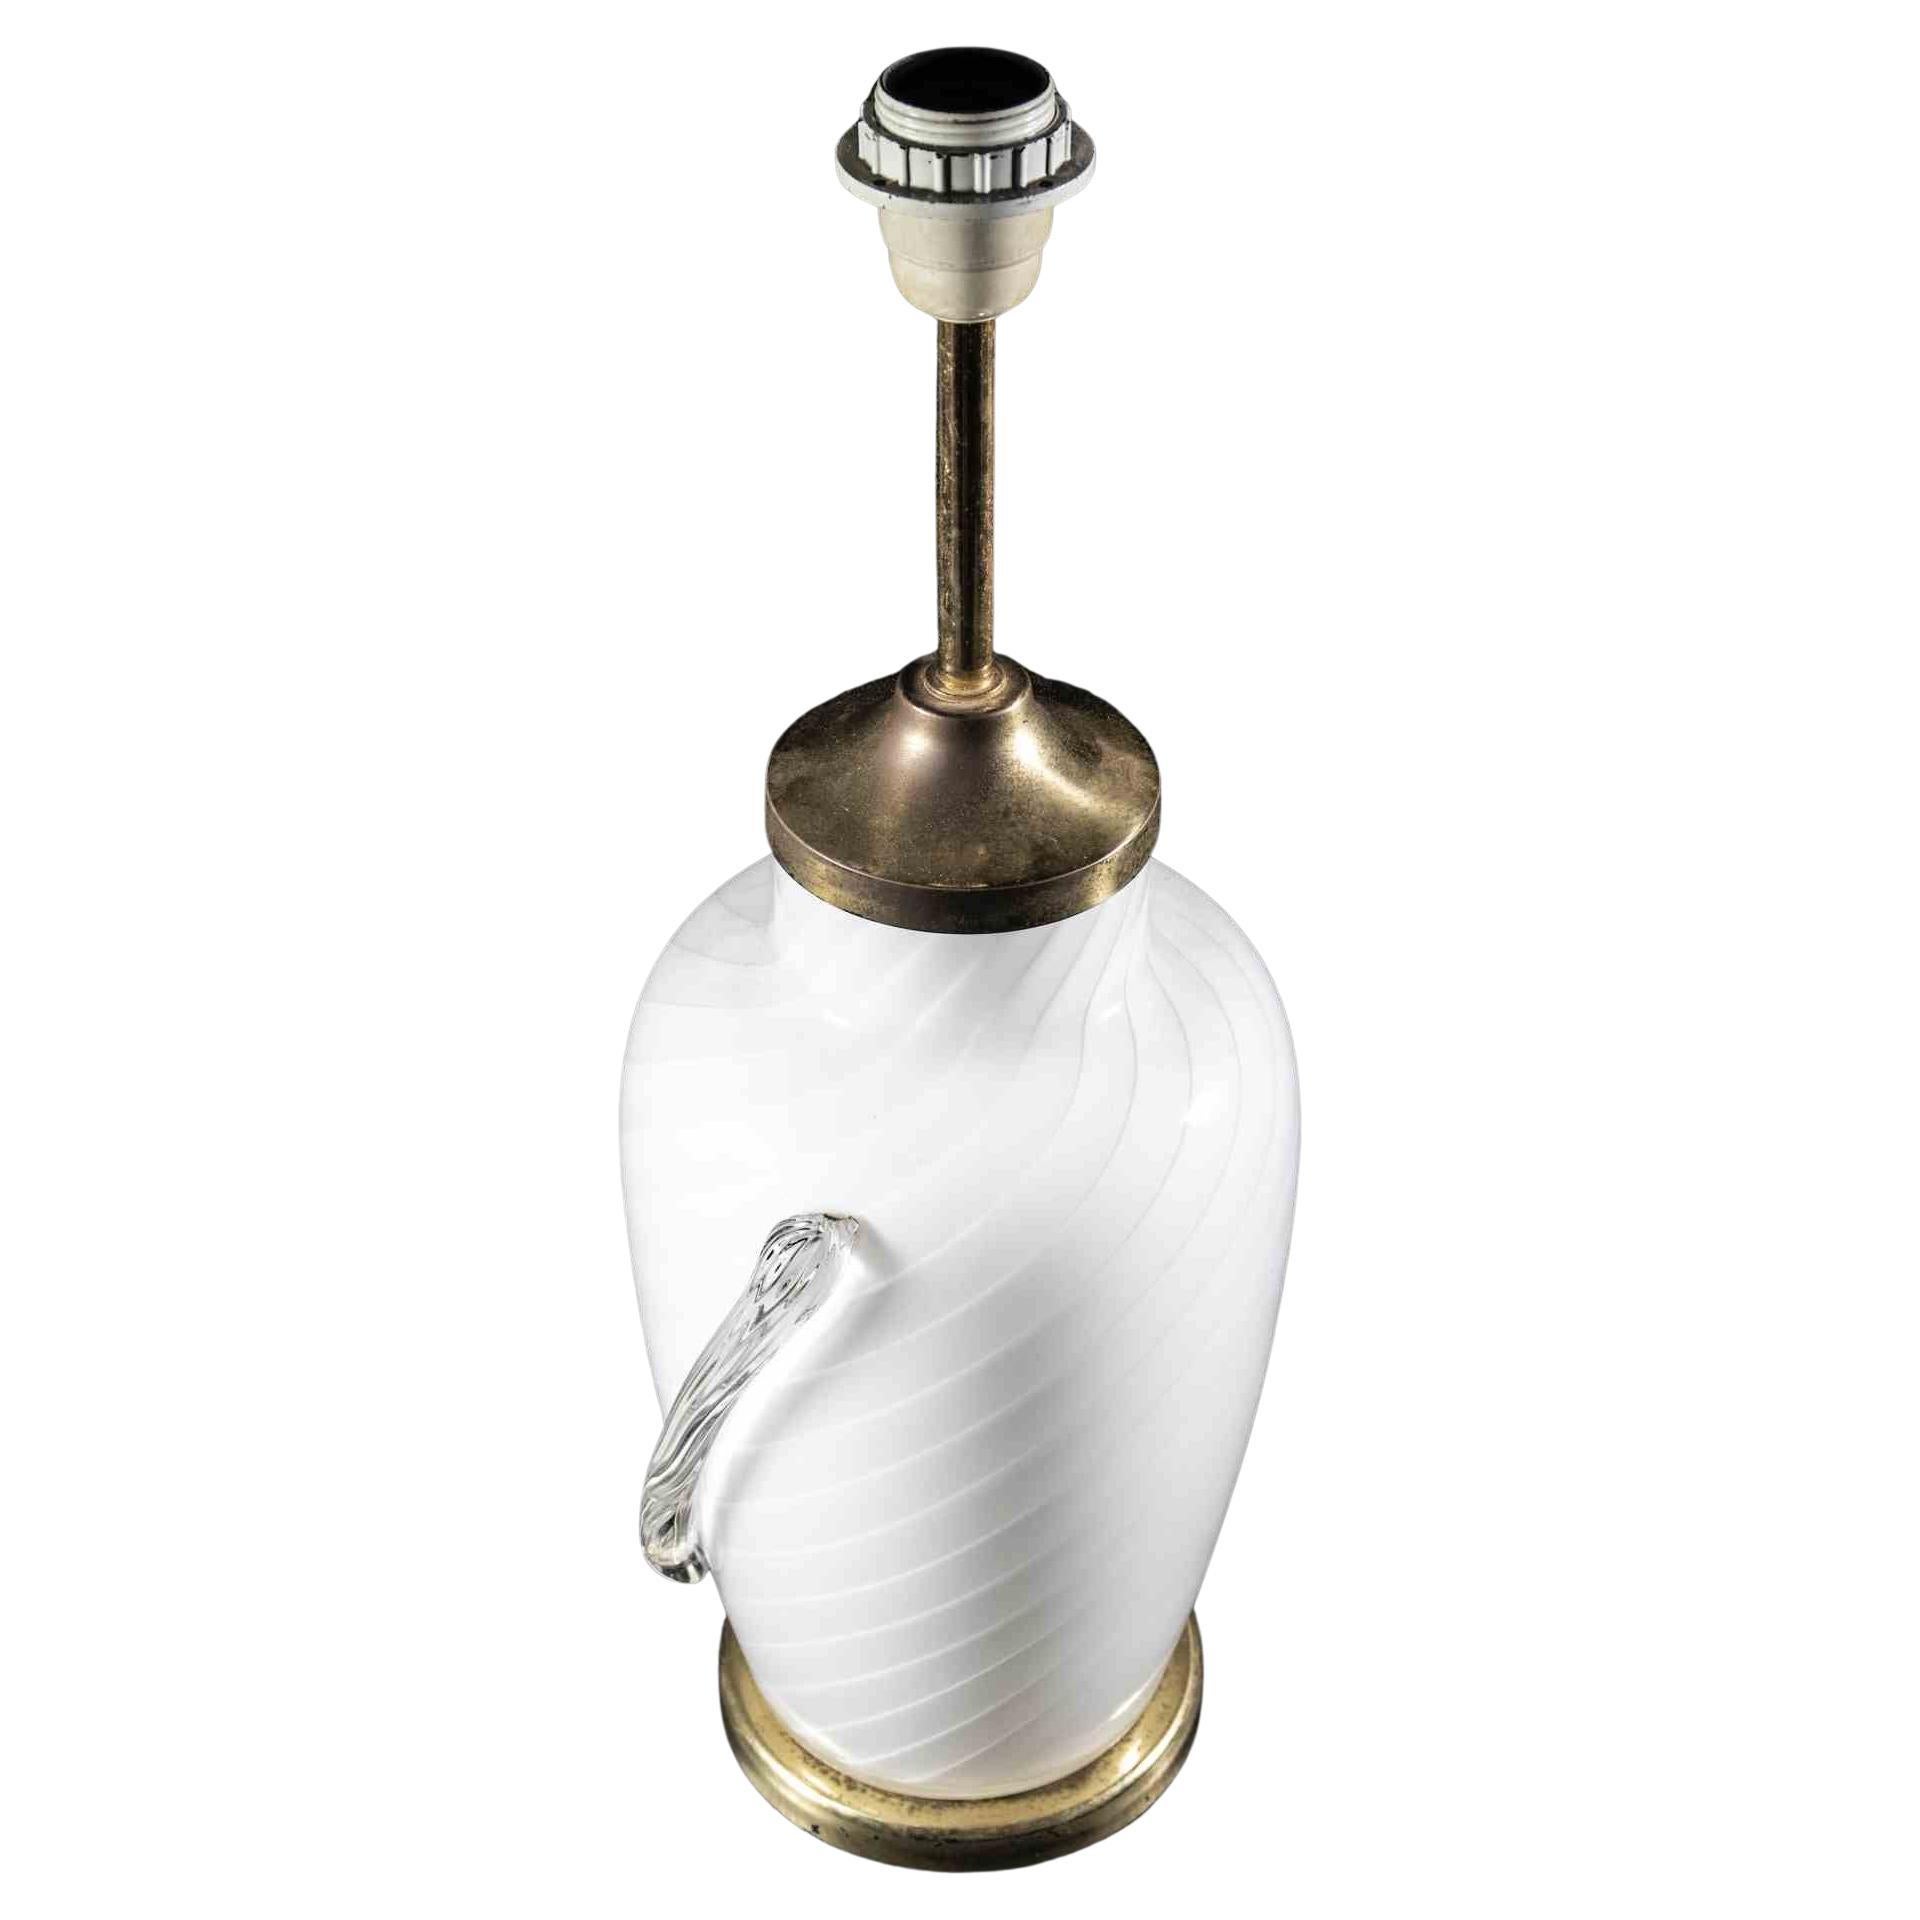 La lampe de table Murano est une lampe de design original réalisée dans la moitié du 20ème siècle par un designer italien.

Une lampe vintage avec un corps en verre de Murano blanc et des bords élégants en laiton.

État neuf.

Décorez votre